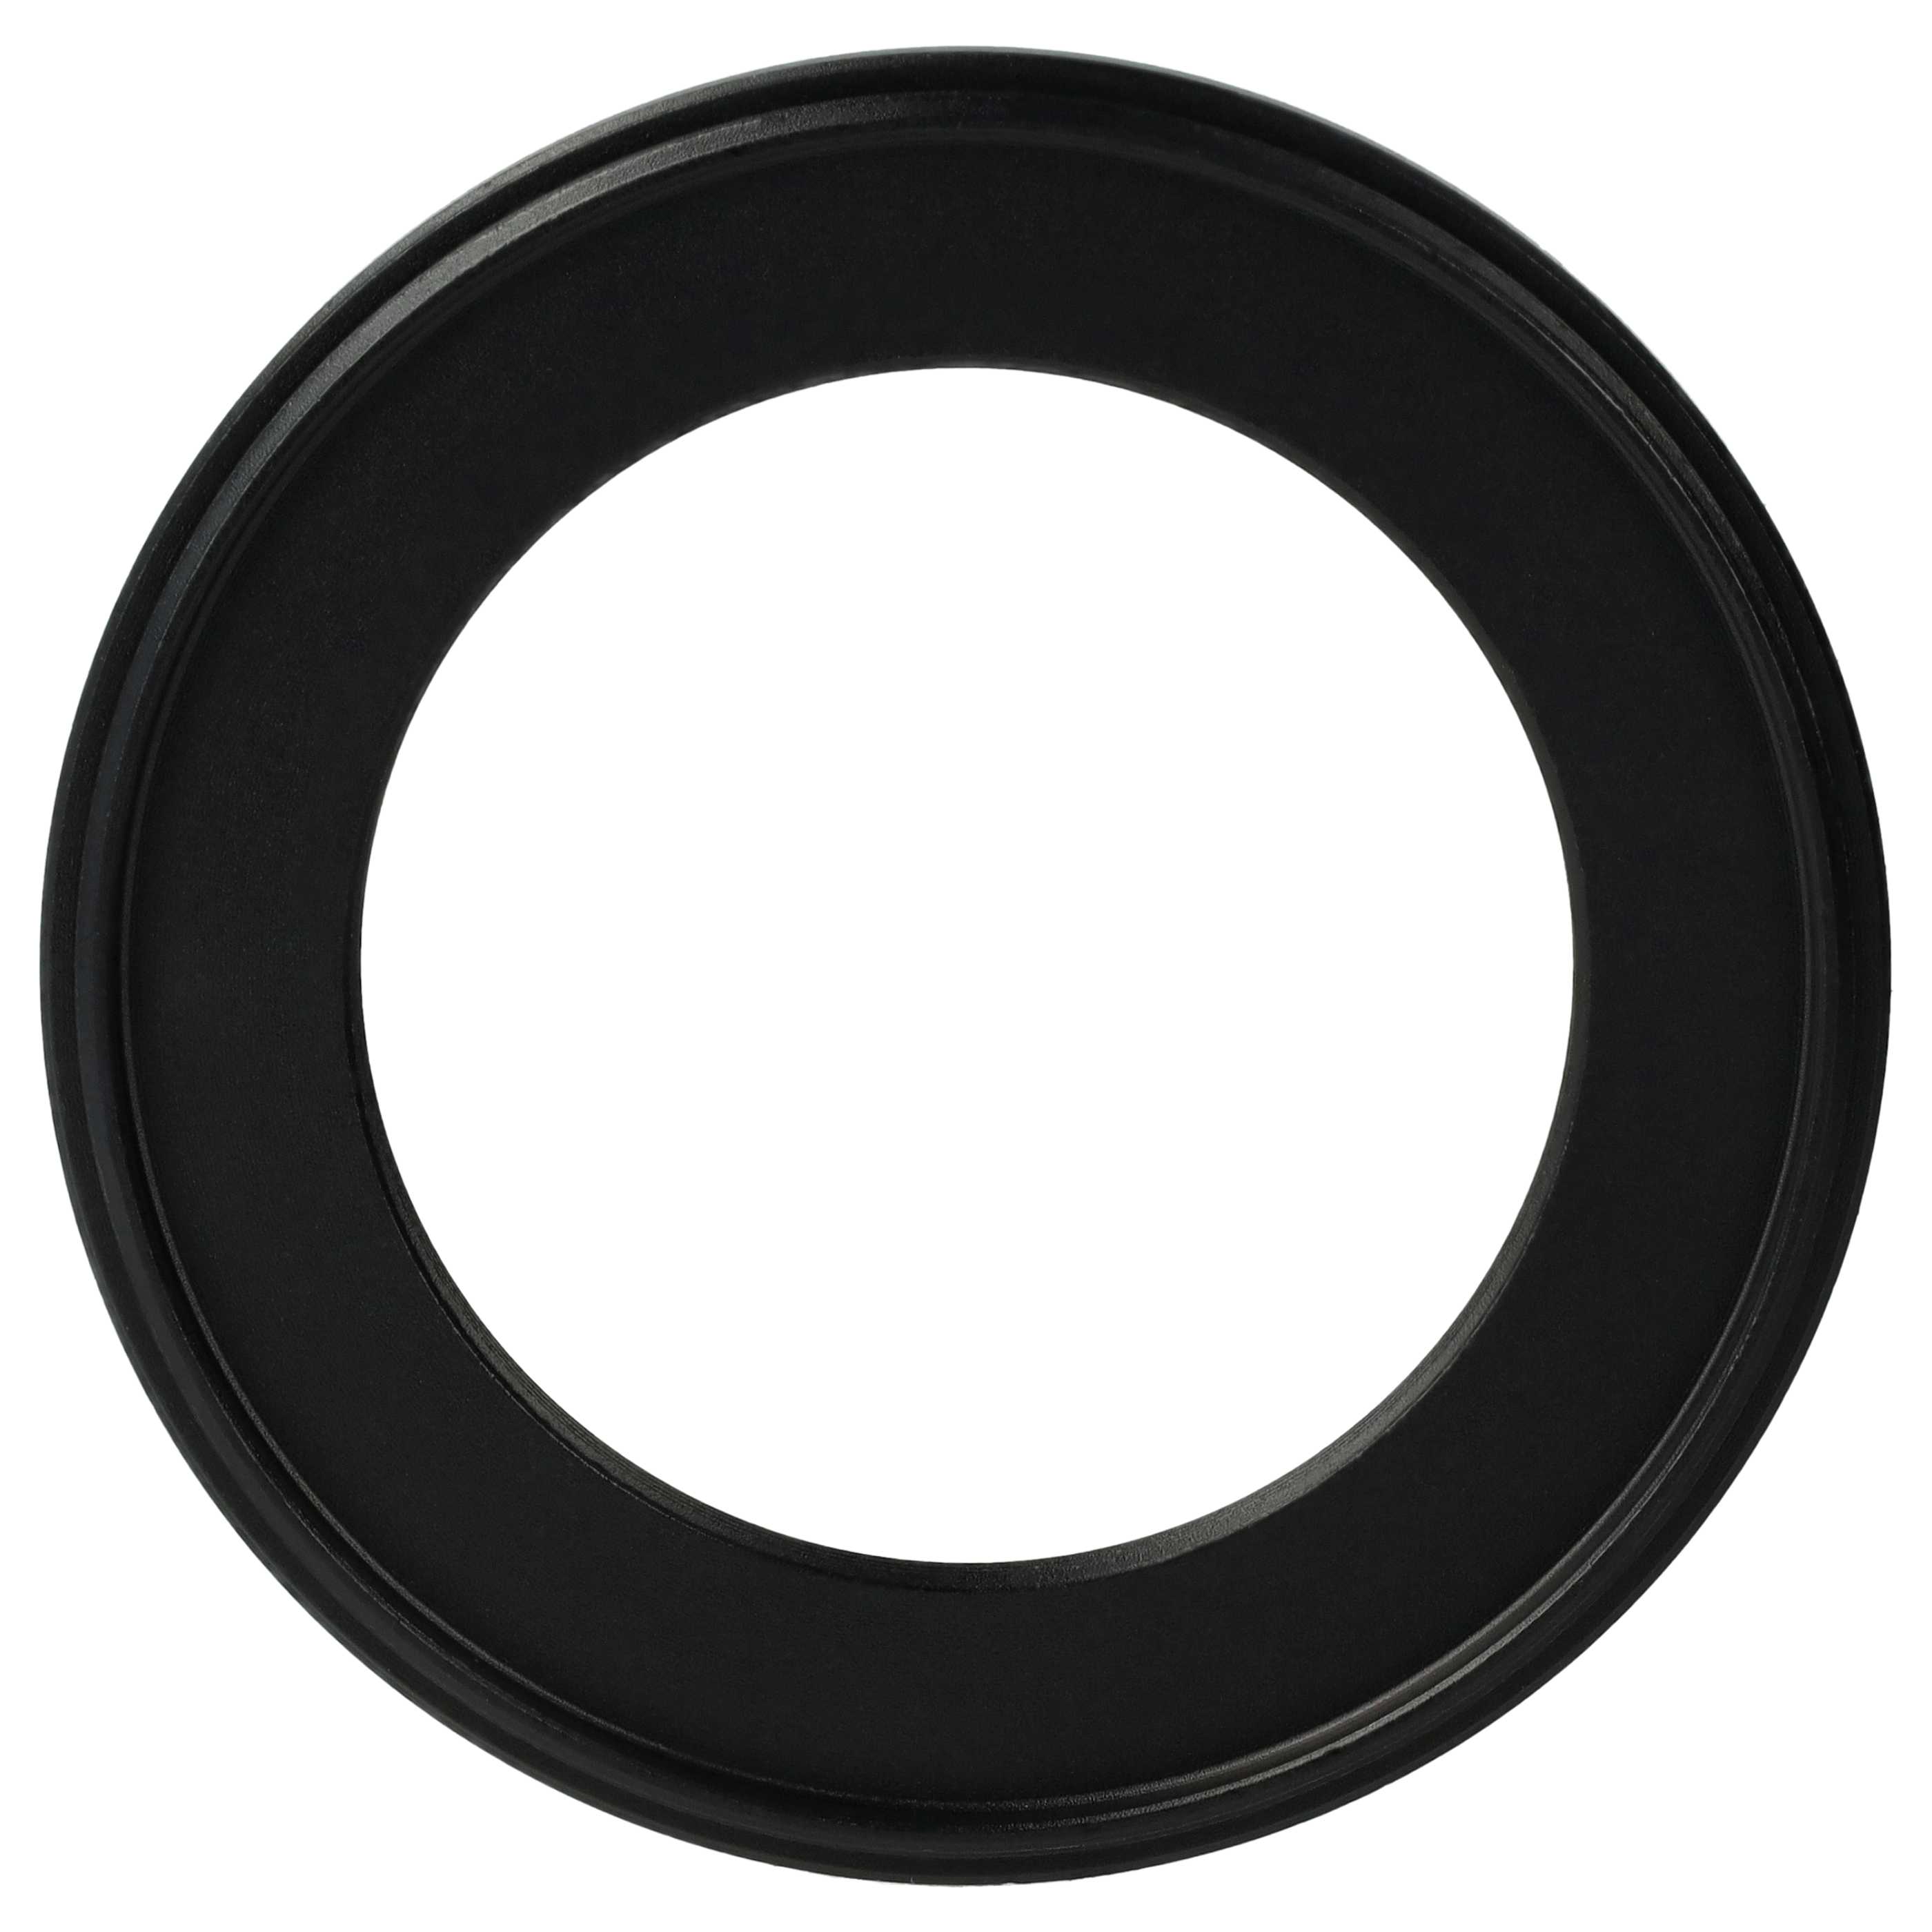 Redukcja filtrowa adapter Step-Down 62 mm - 43 mm pasująca do obiektywu - metal, czarny